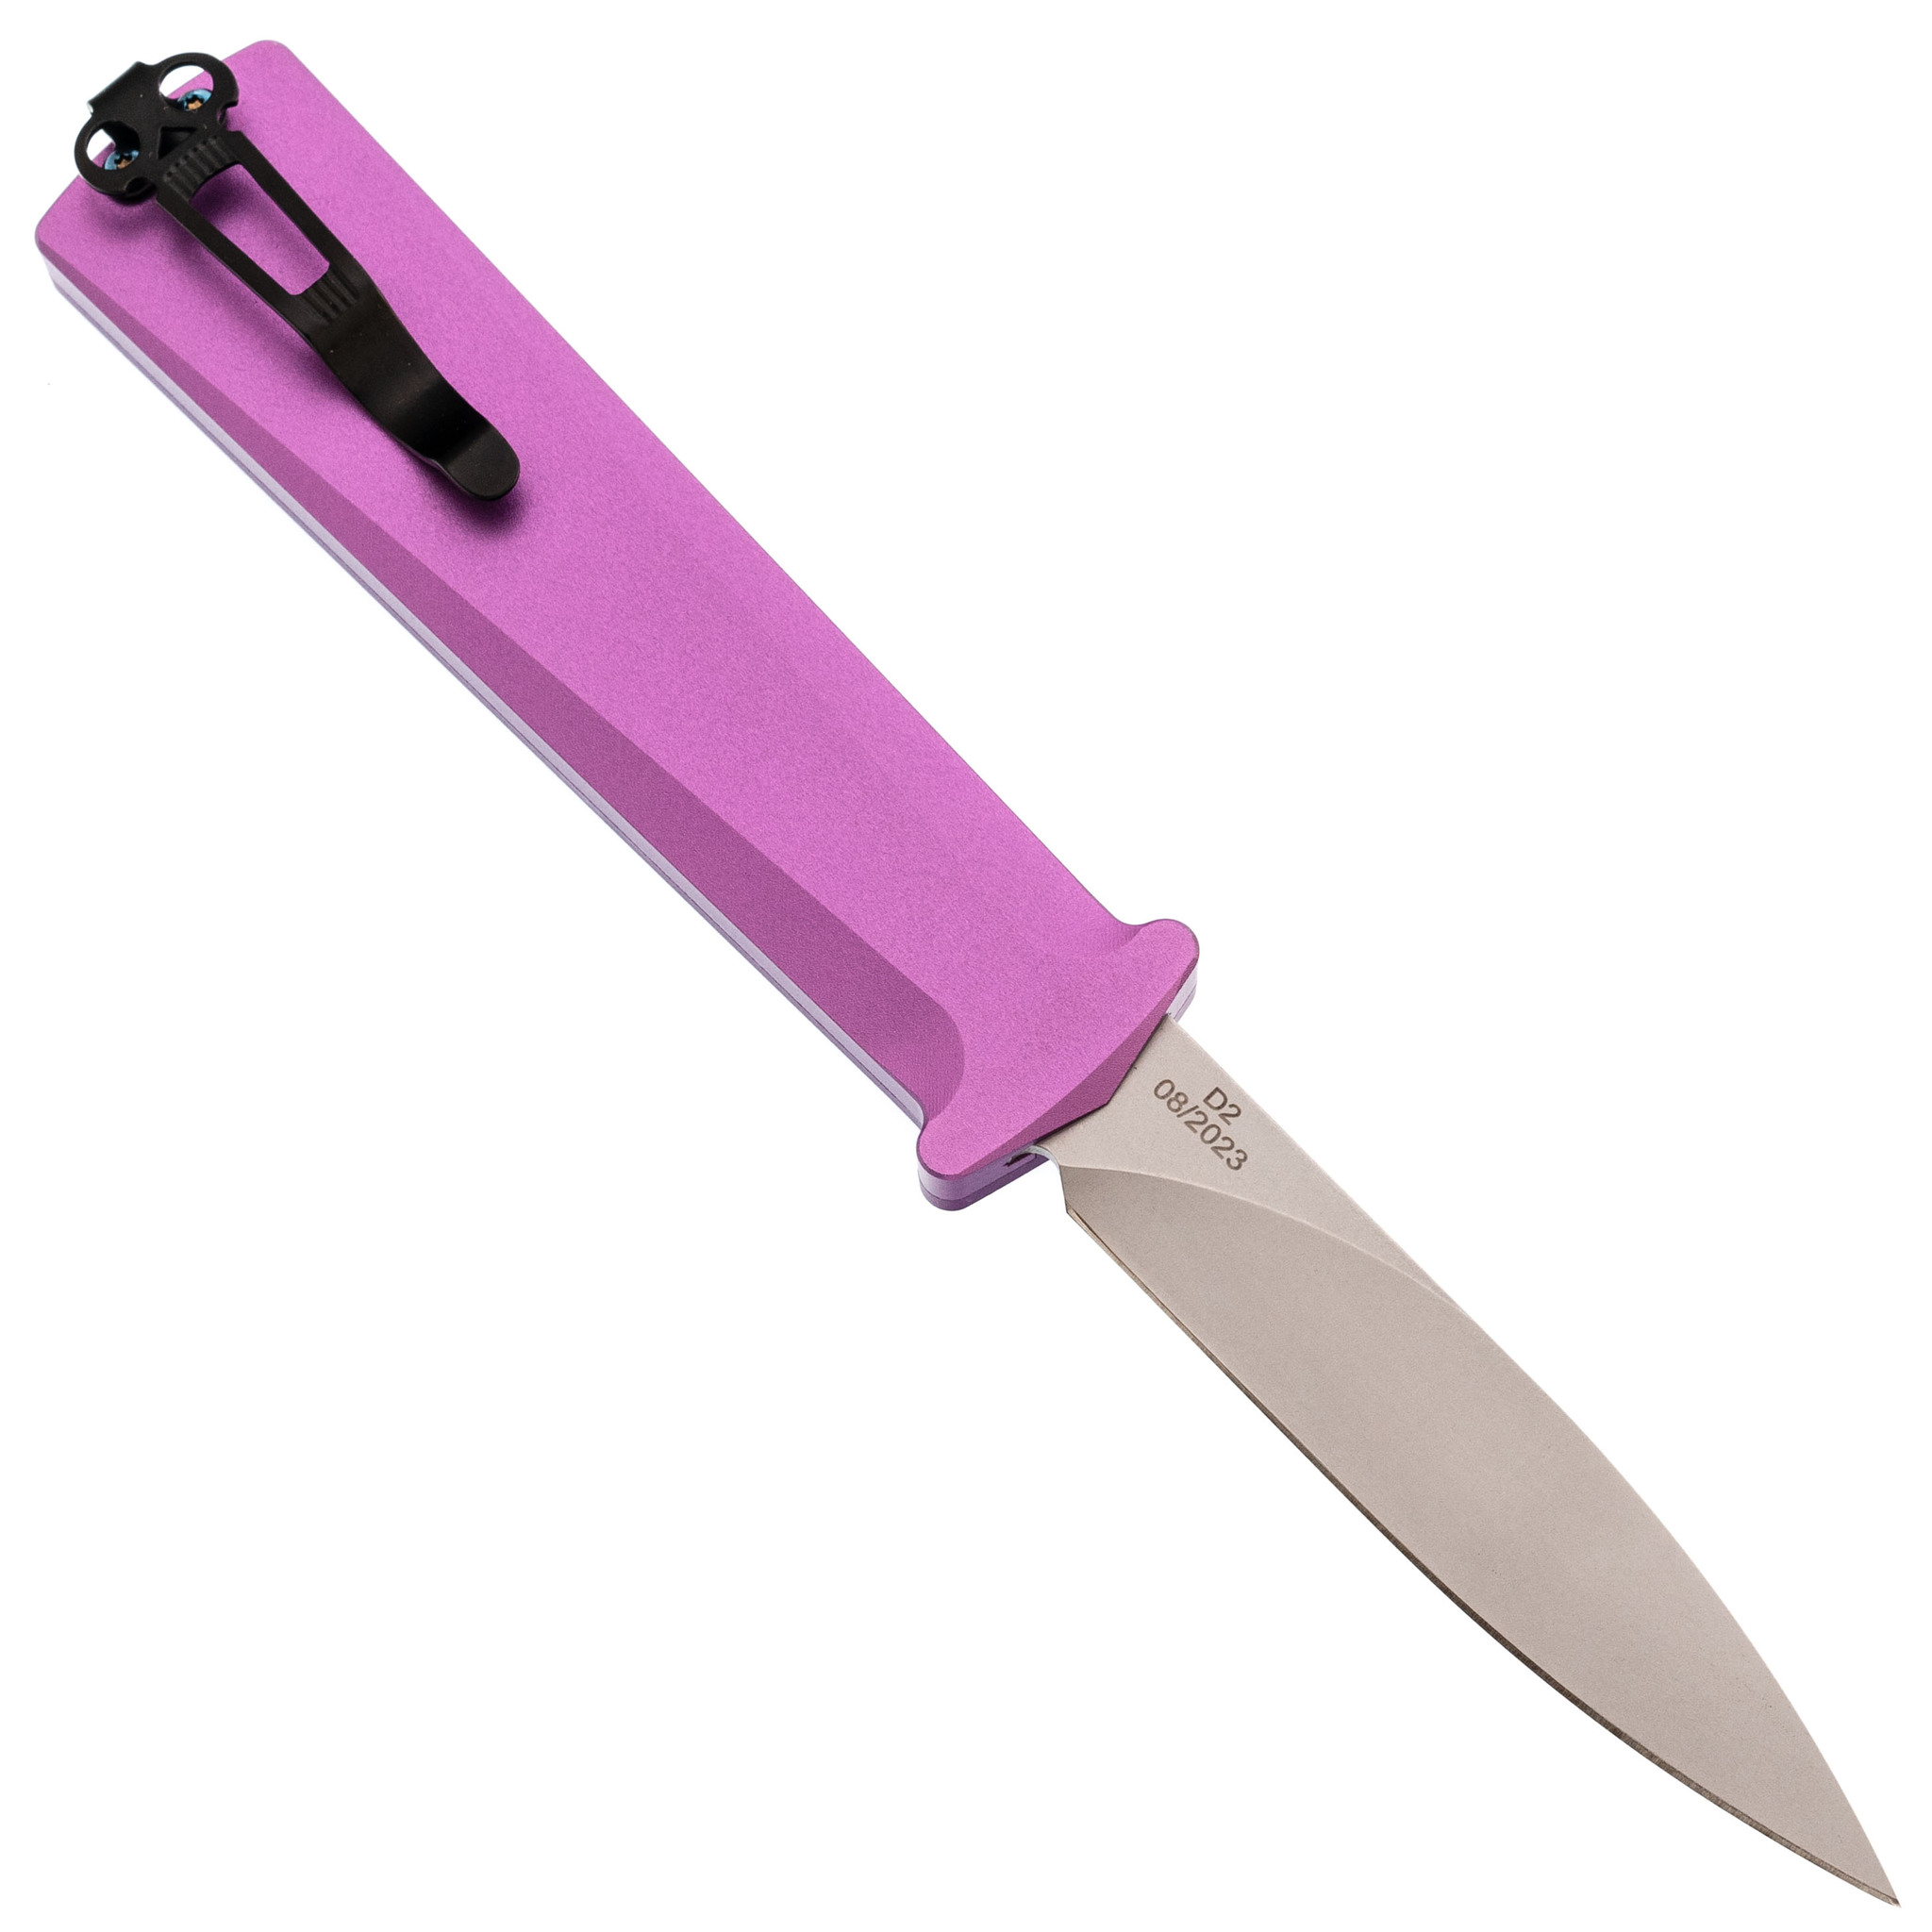 Автоматический нож Daggerr Кощей Slim Purple, сталь D2, рукоять алюминий - фото 3